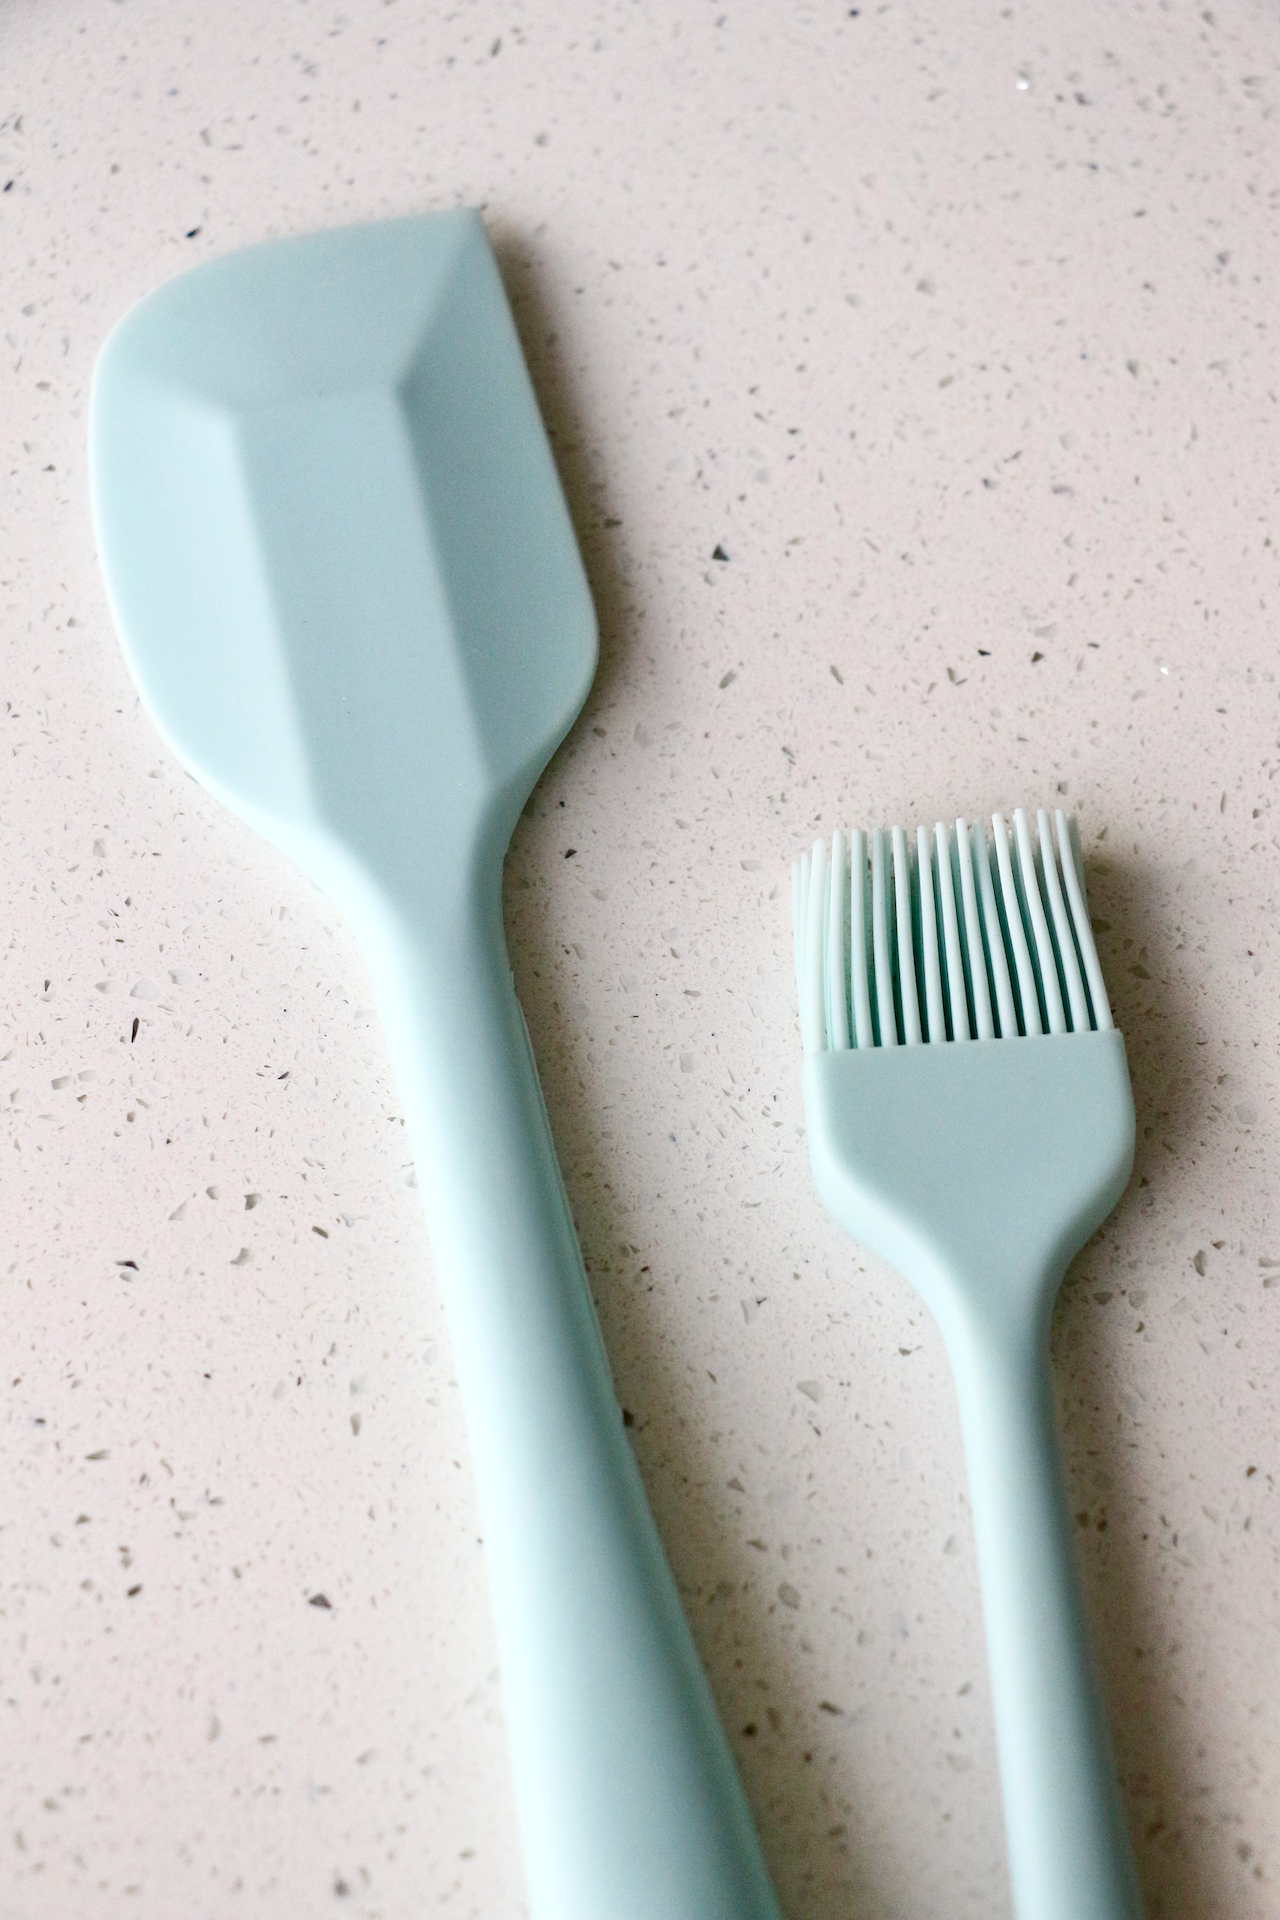 Baby Blue Spatula & Silicone Pastry Brush Set (Regular-sized)